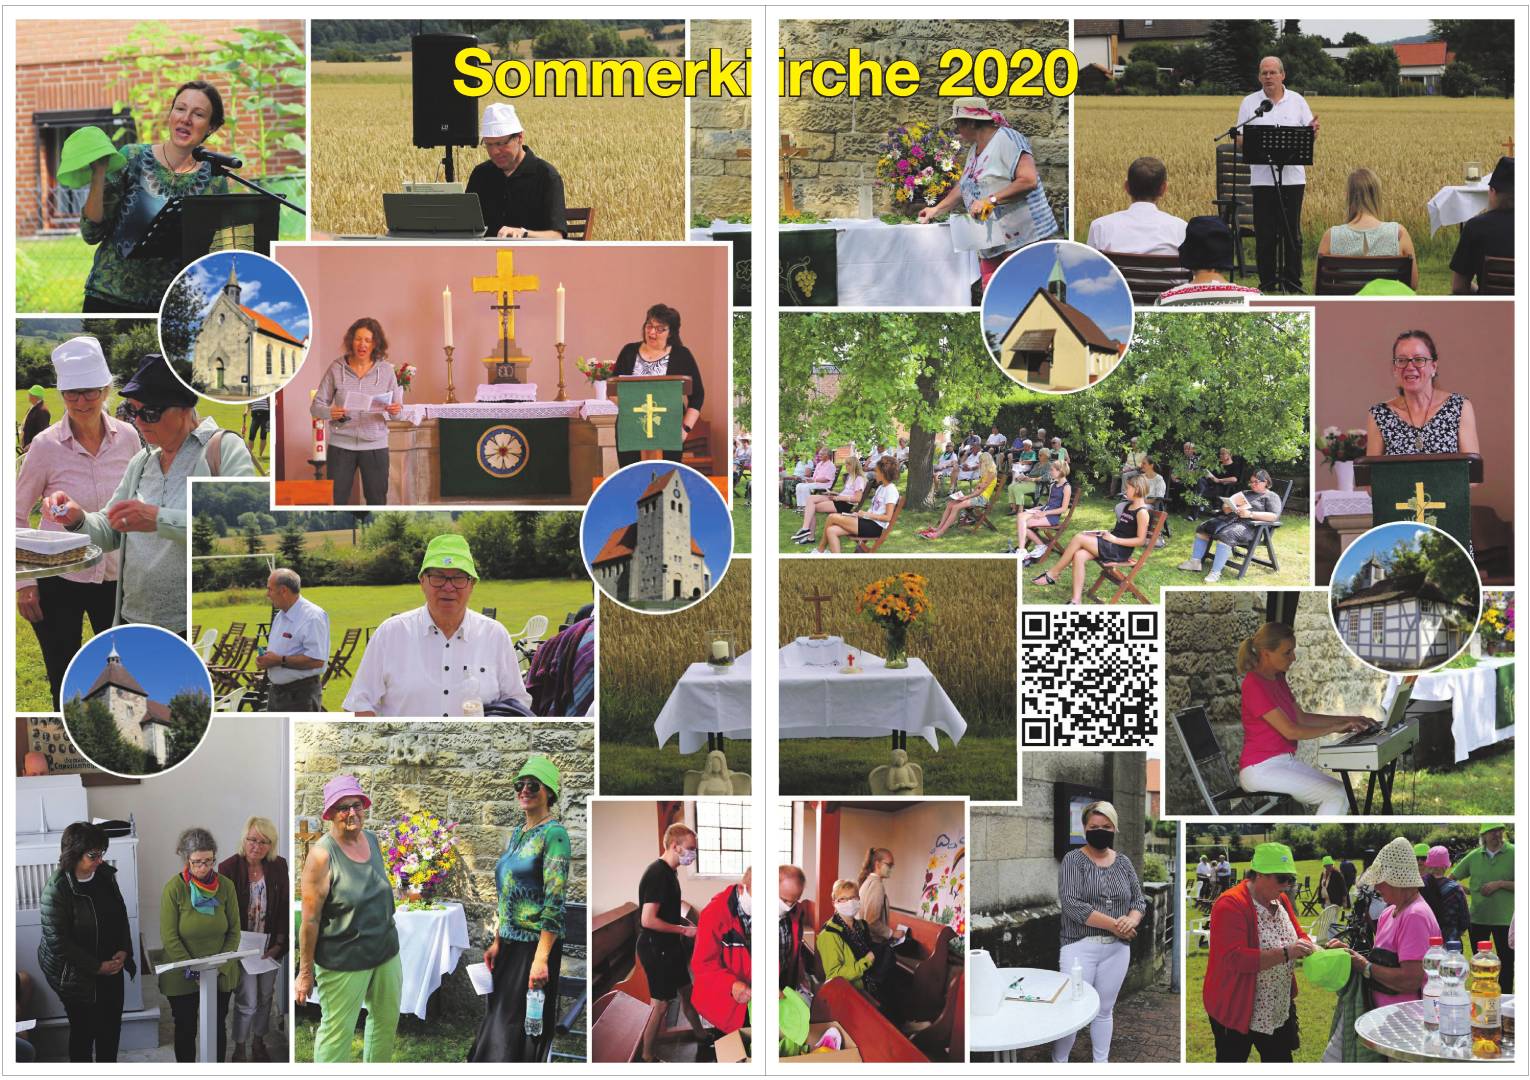 Gemeindebrief September 2020 - November 2020